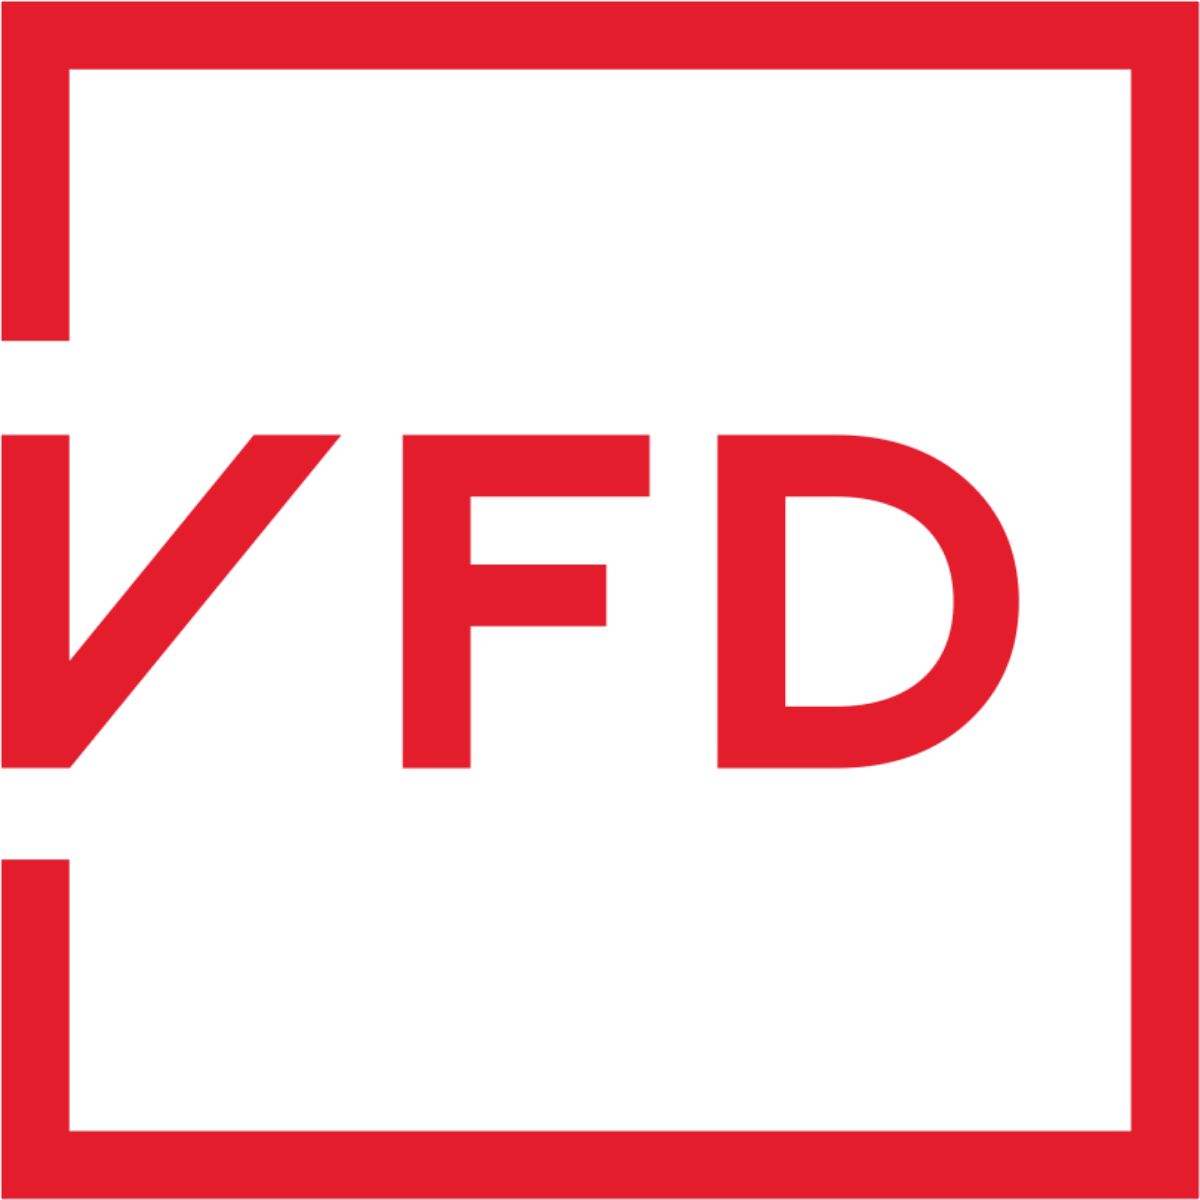 VFD-doors